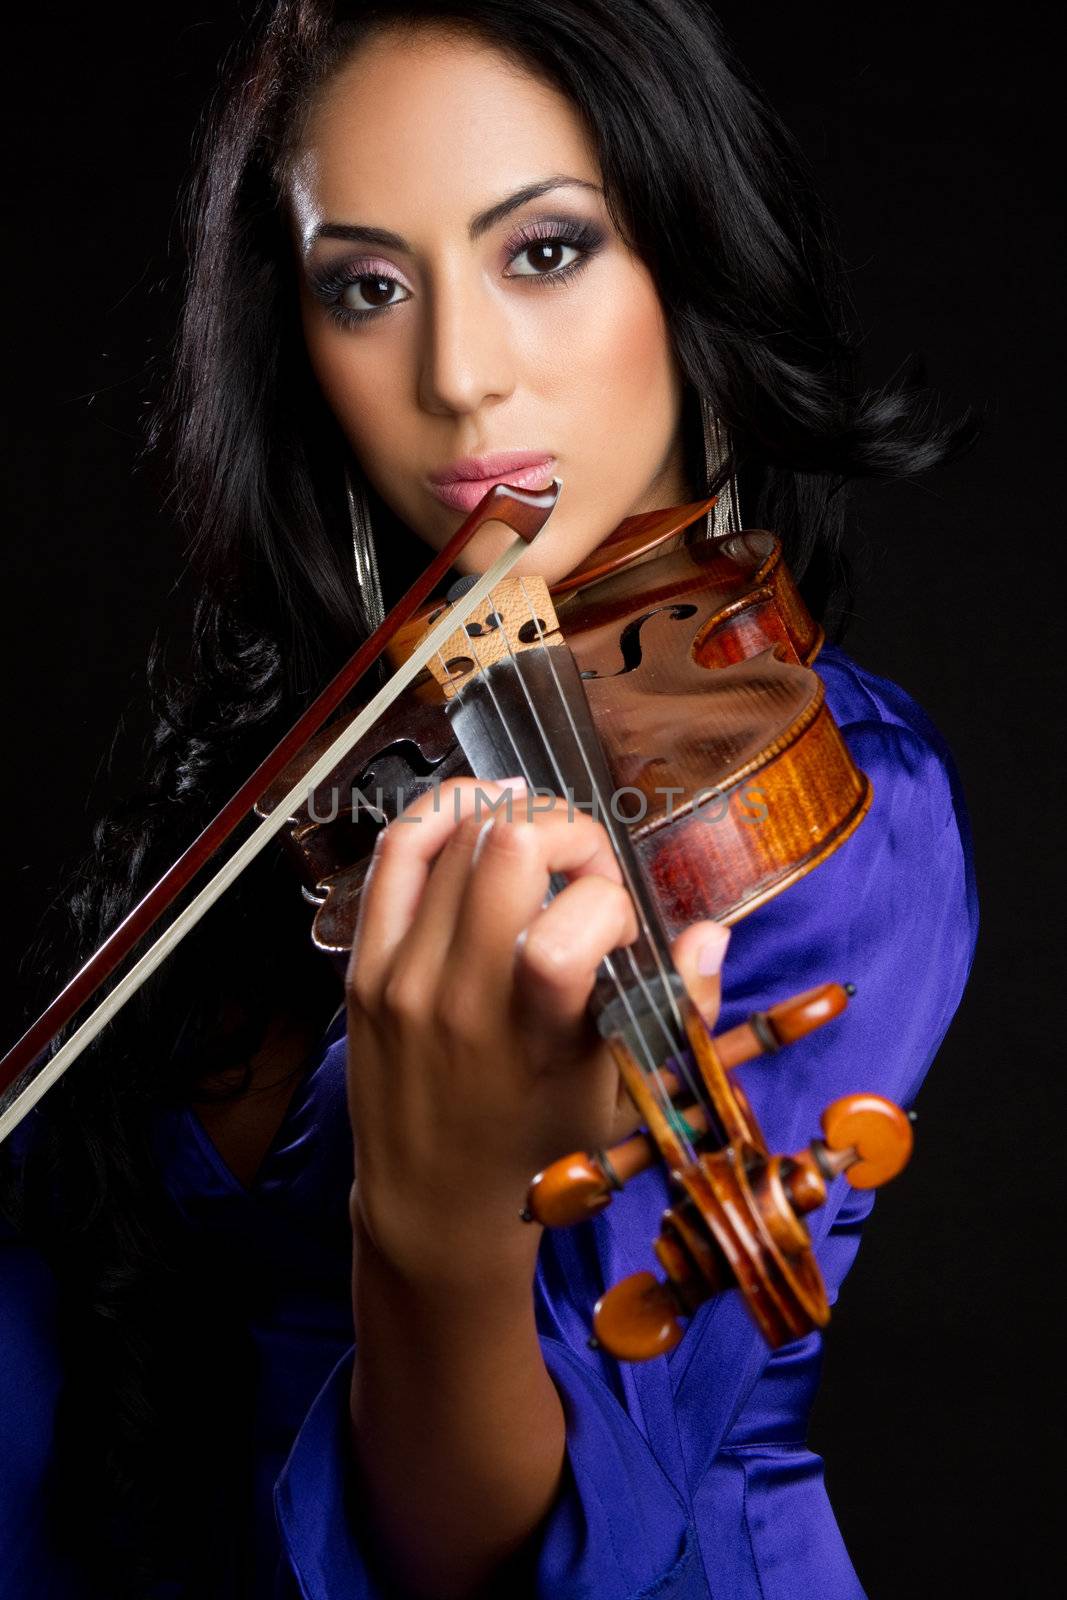 Violin Woman by keeweeboy